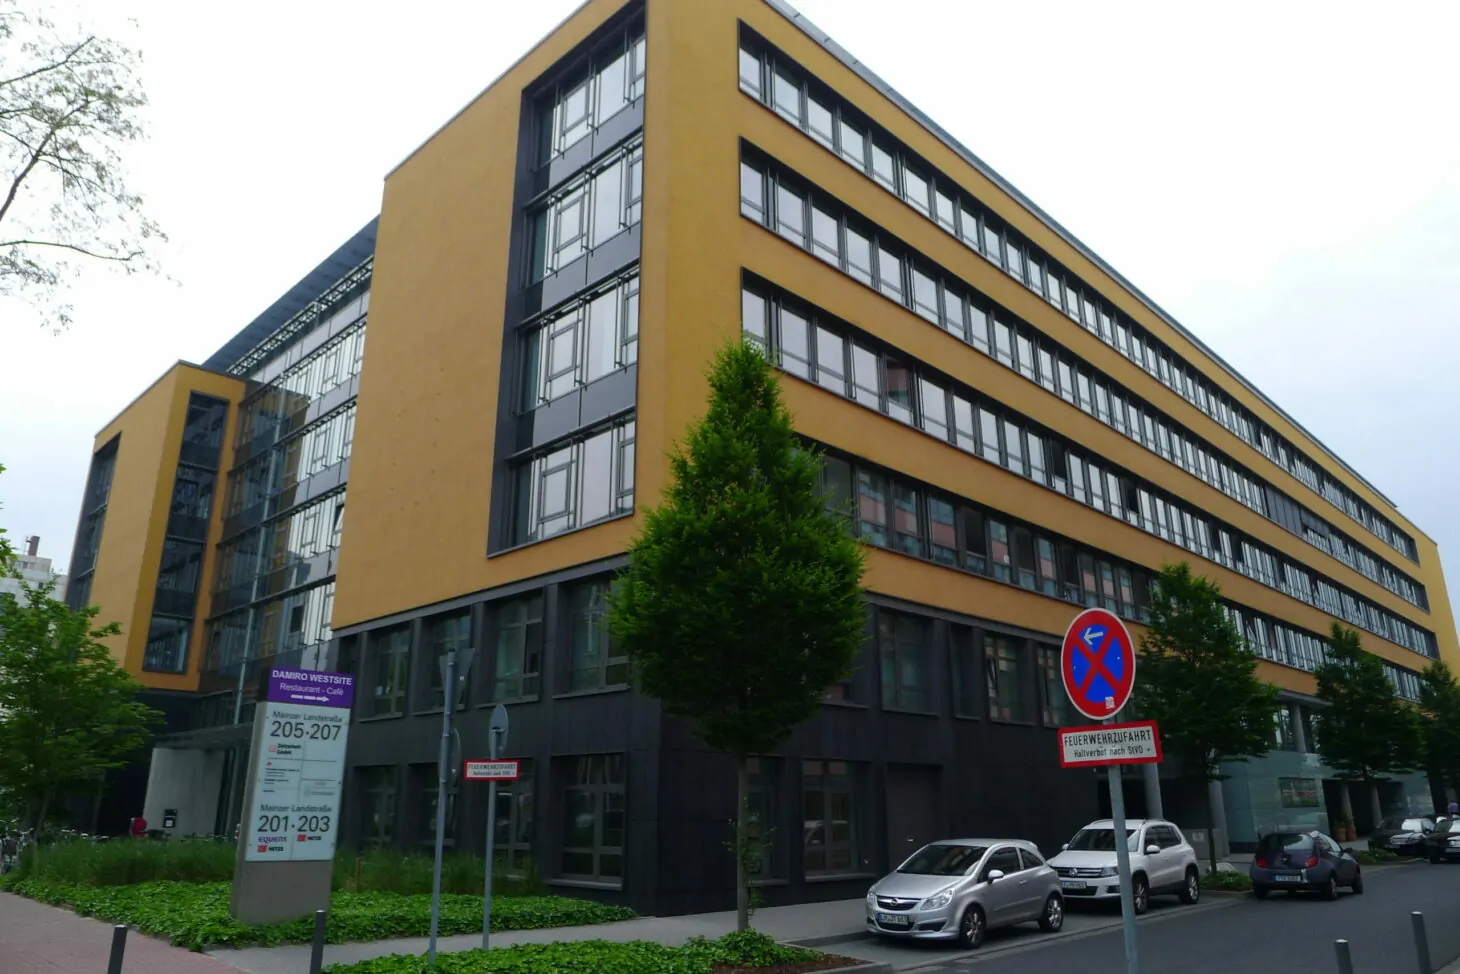 Außenansicht eines gelben Gebäudes, valantic Niederlassung Frankfurt am Main